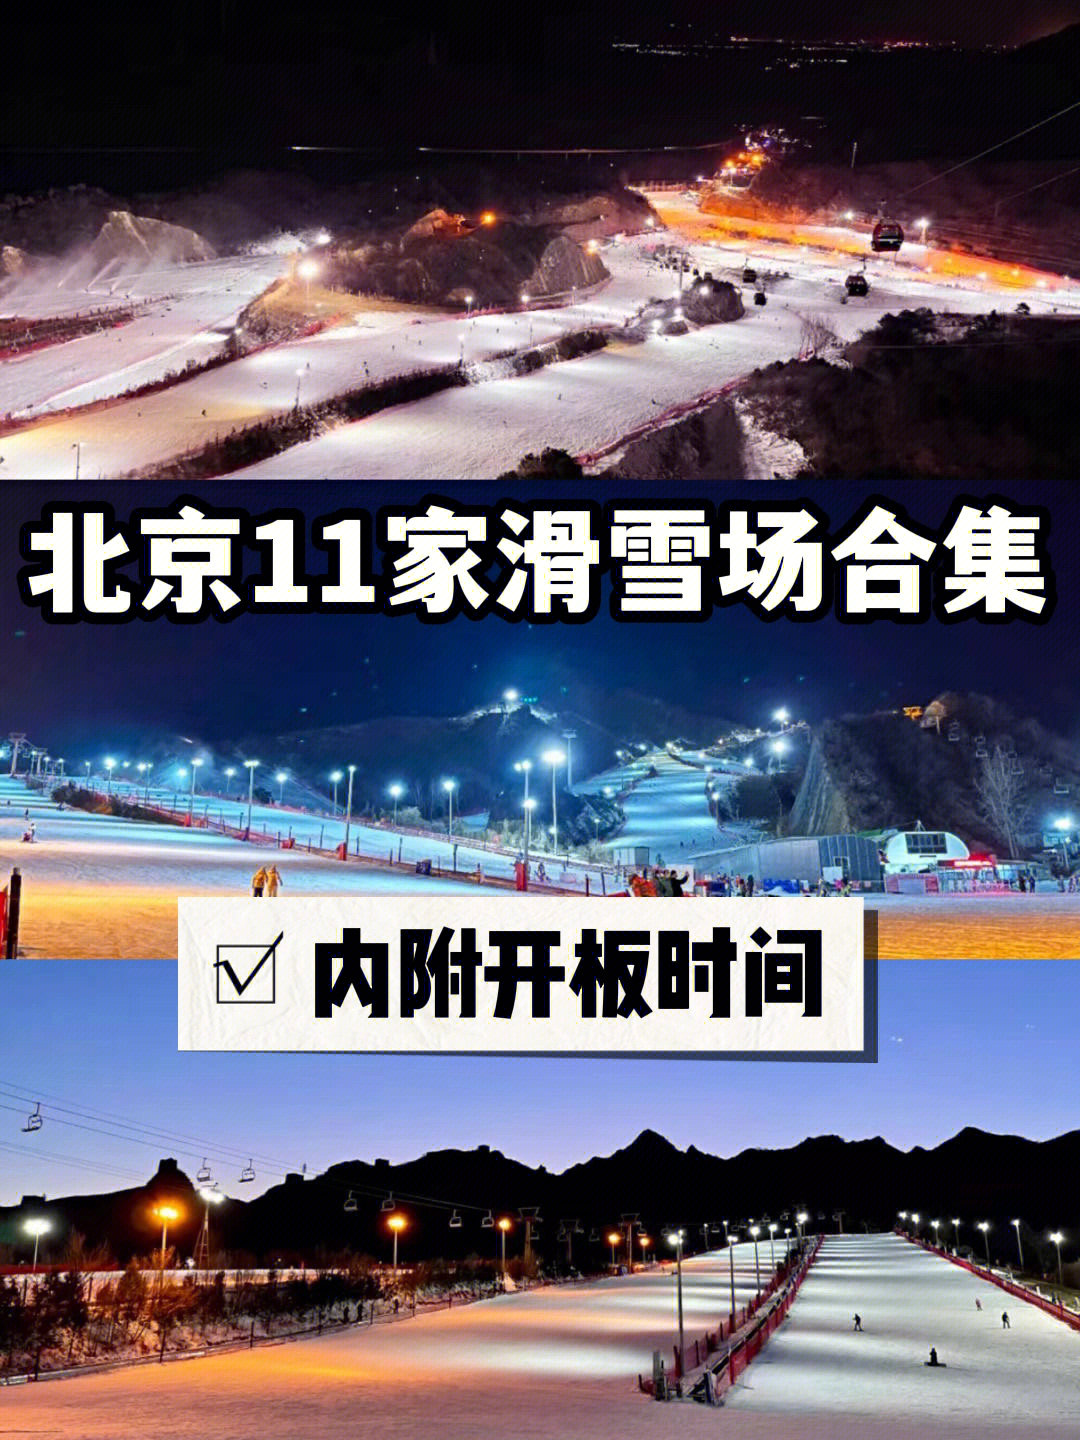 北京11家滑雪场合集内附开板时间及攻略